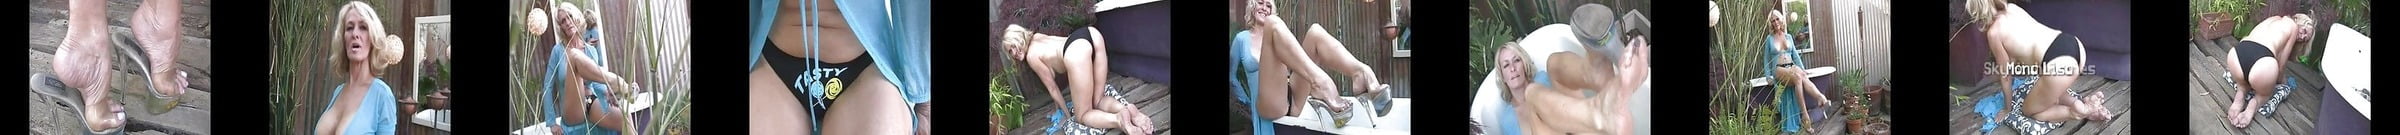 Julie Soles Free Babe Porn Video C9 Xhamster Xhamster 